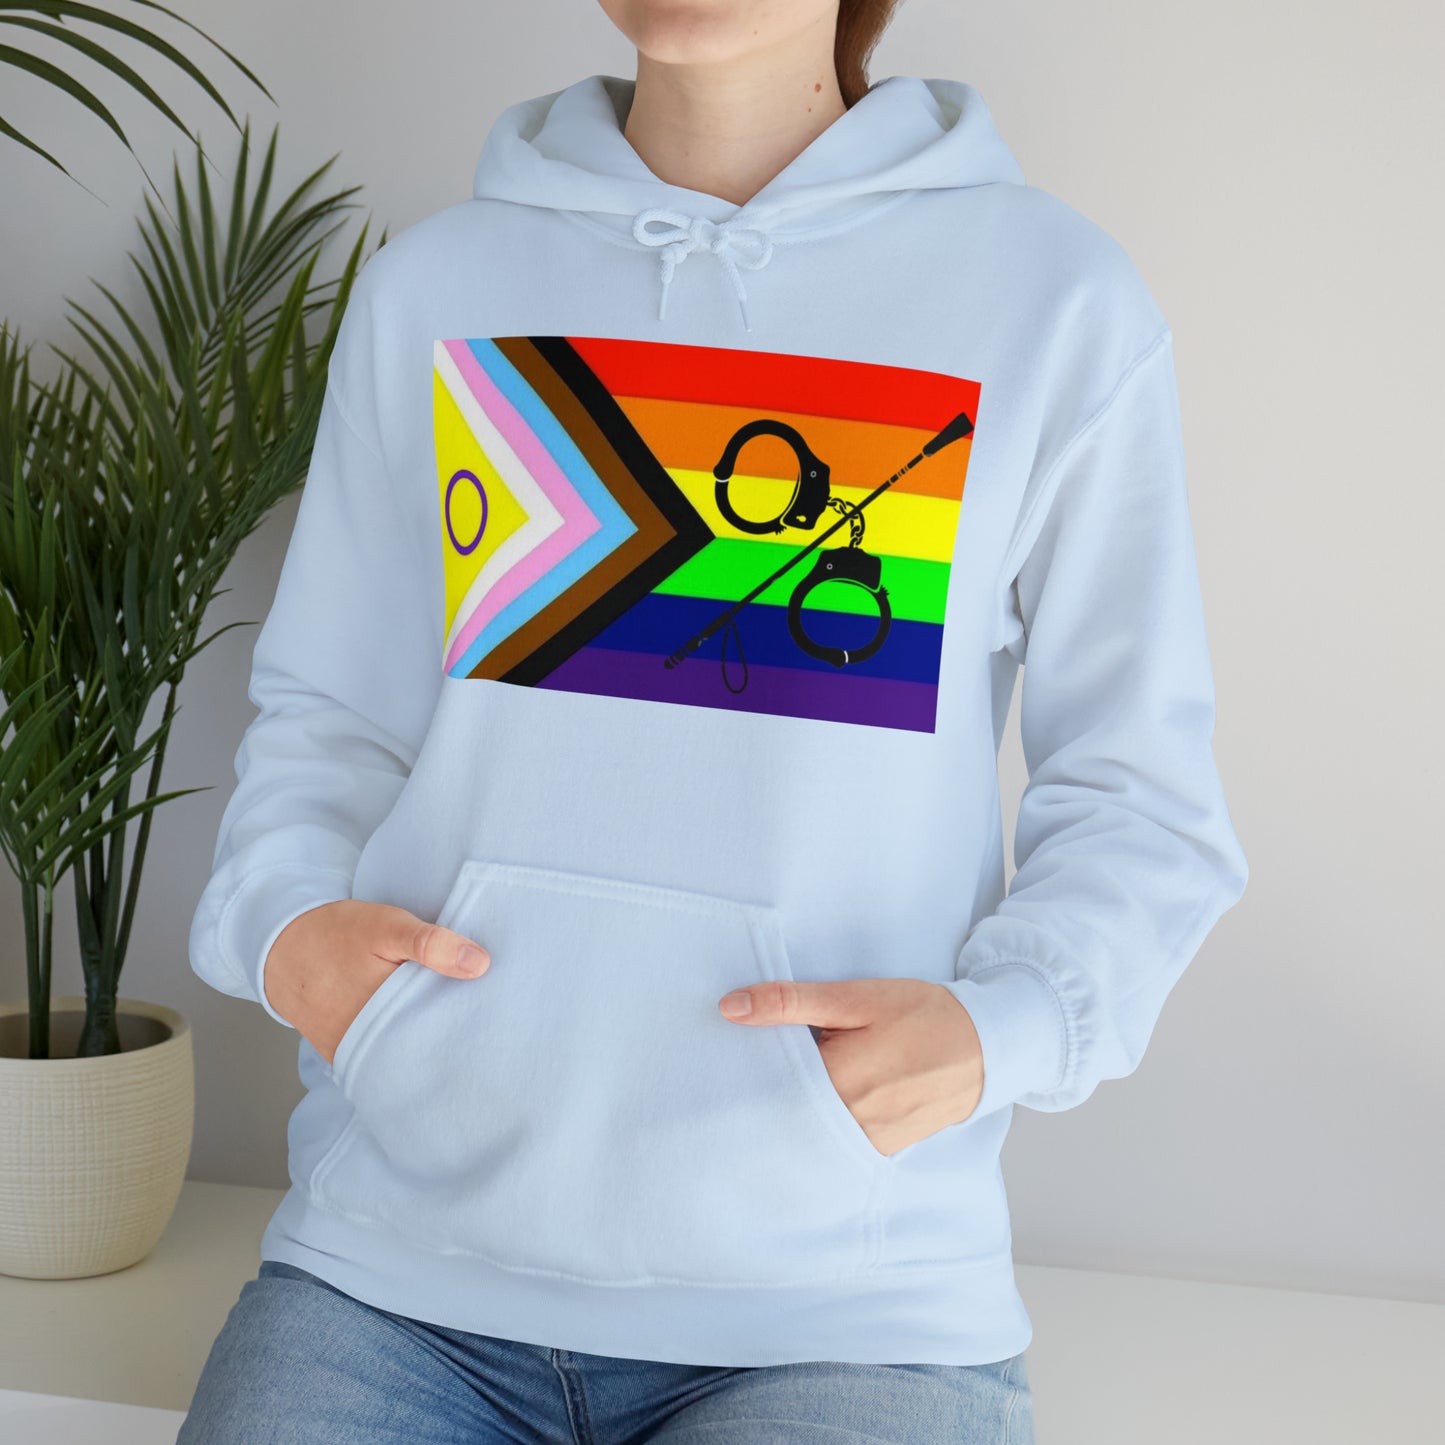 Kink Pride Unisex Hooded Sweatshirt